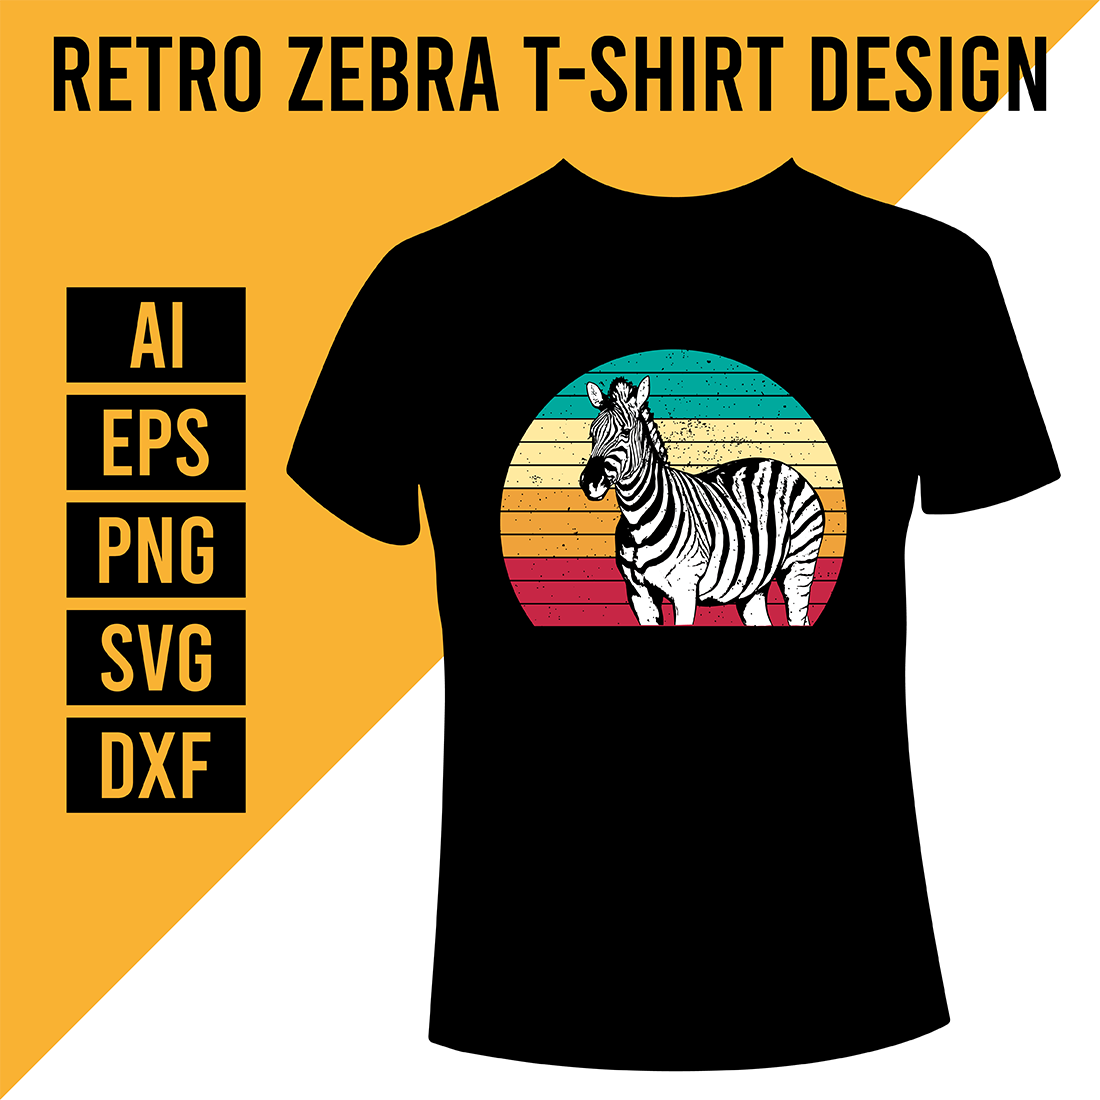 Retro Zebra T-Shirt Design cover image.